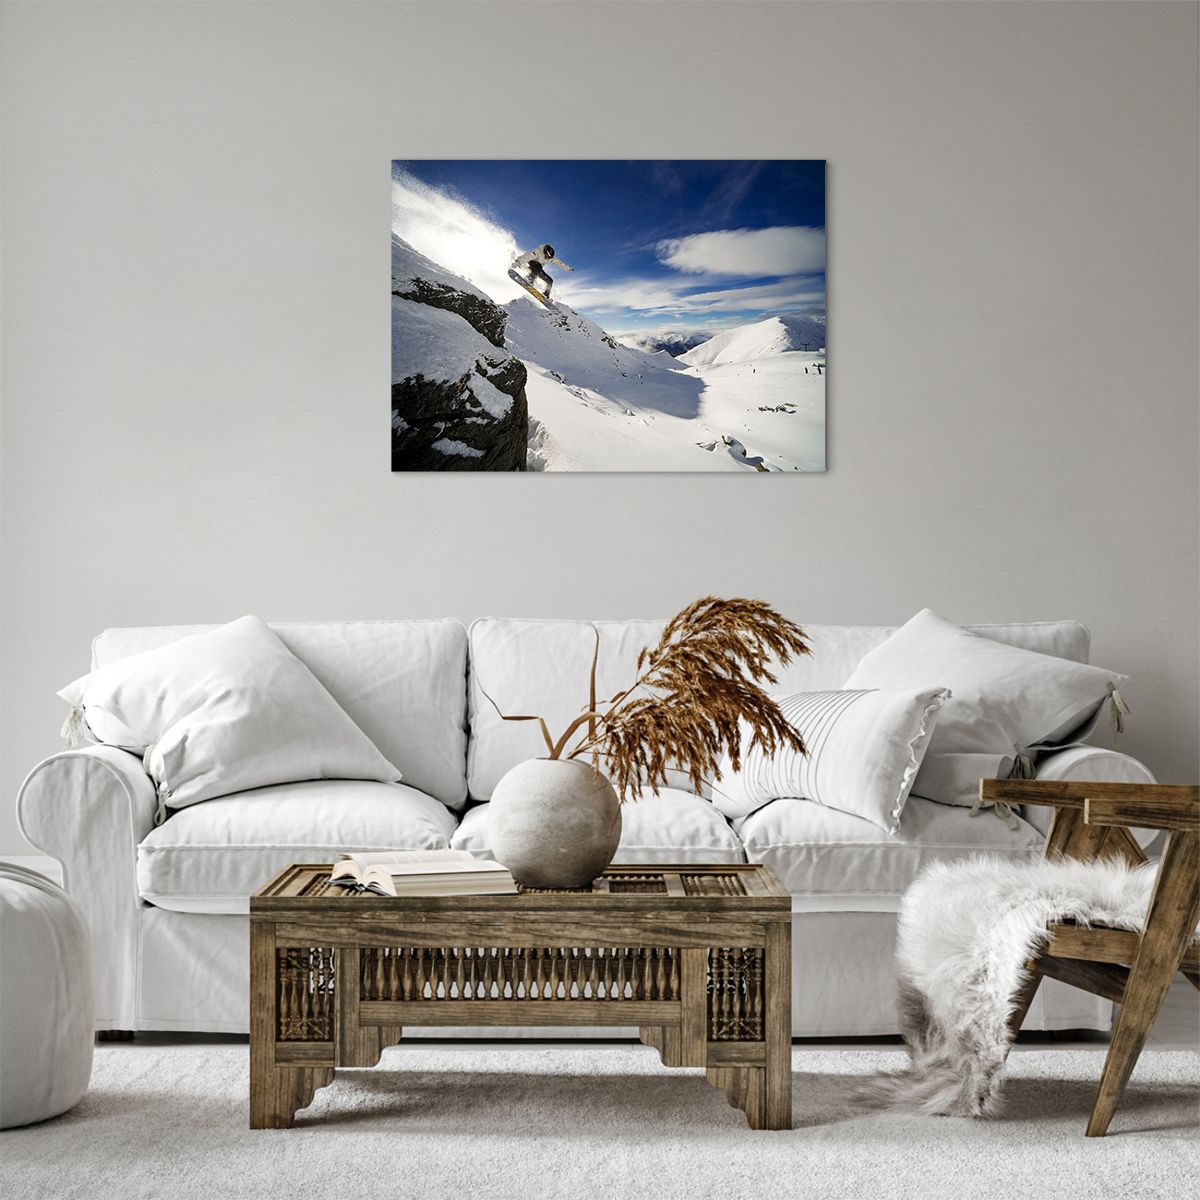 Bild auf Leinwand Snowboard, Bild auf Leinwand Landschaft, Bild auf Leinwand Berge, Bild auf Leinwand Schnee, Bild auf Leinwand Sport